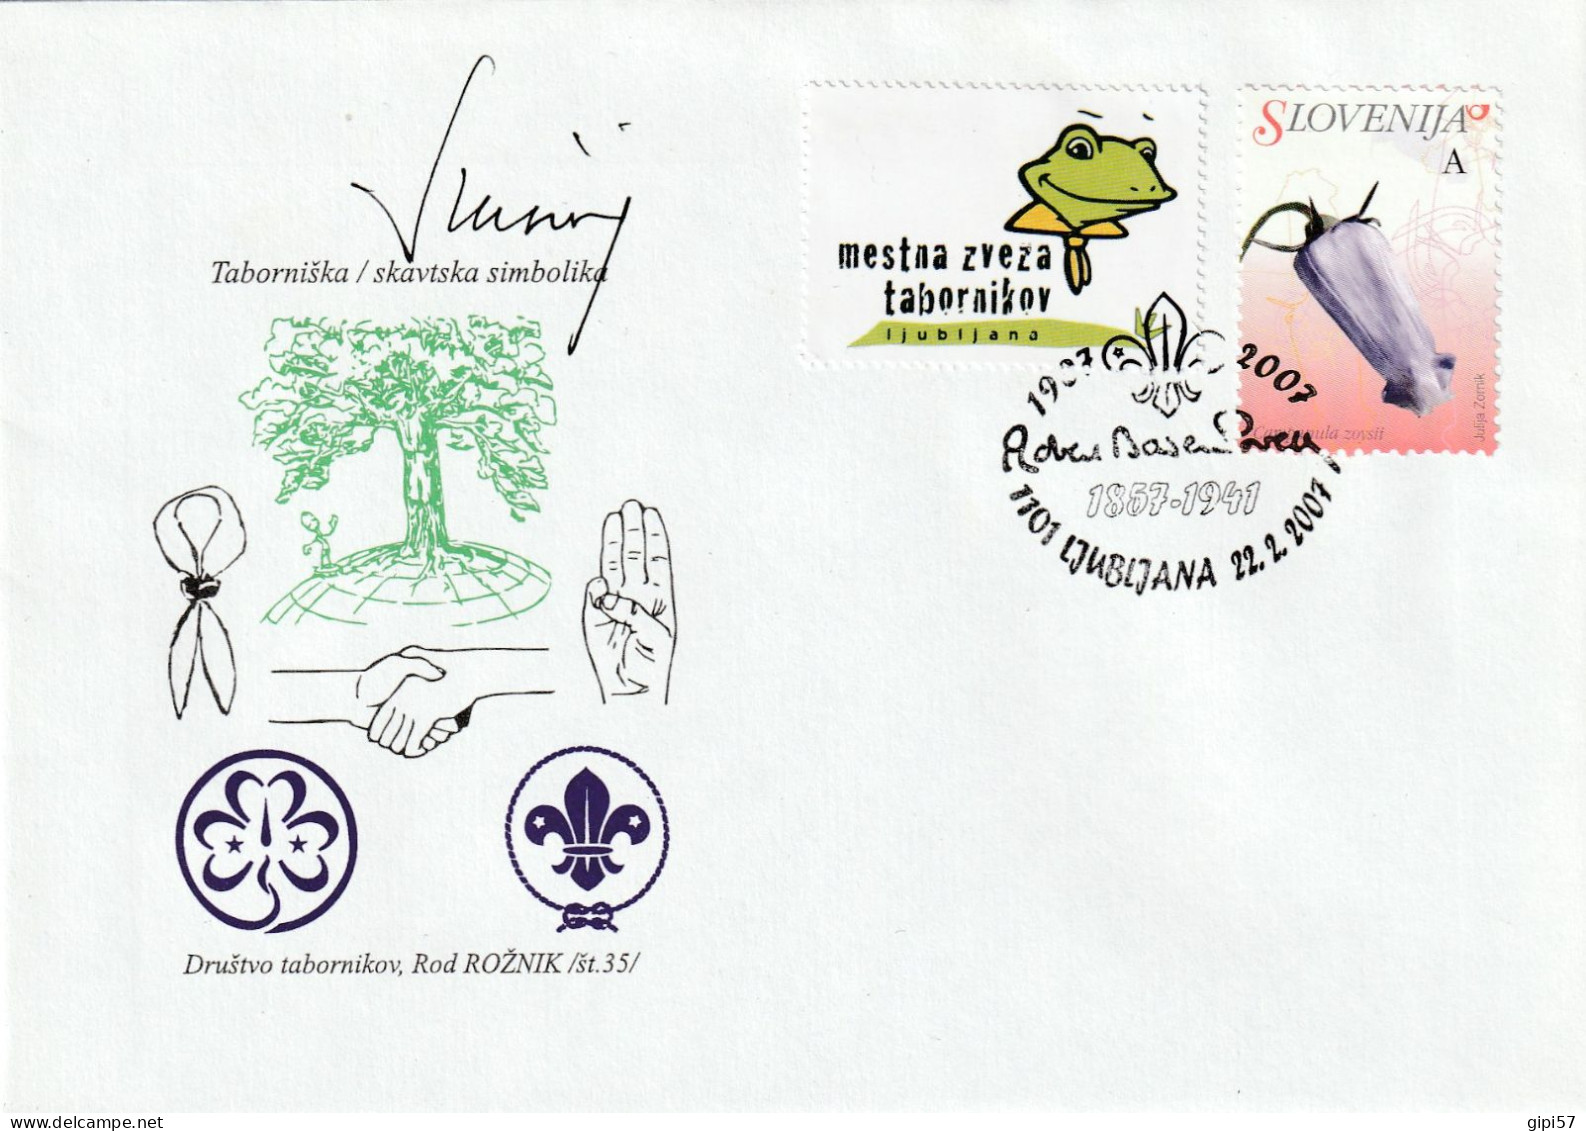 SCOUT SLOVENIA 2007 - 150TH BADEN POWELL BIRTH ANNIVERSARY. FDC CINDERELLA SPECIAL CANCEL LJUBLJANA - Slovenia